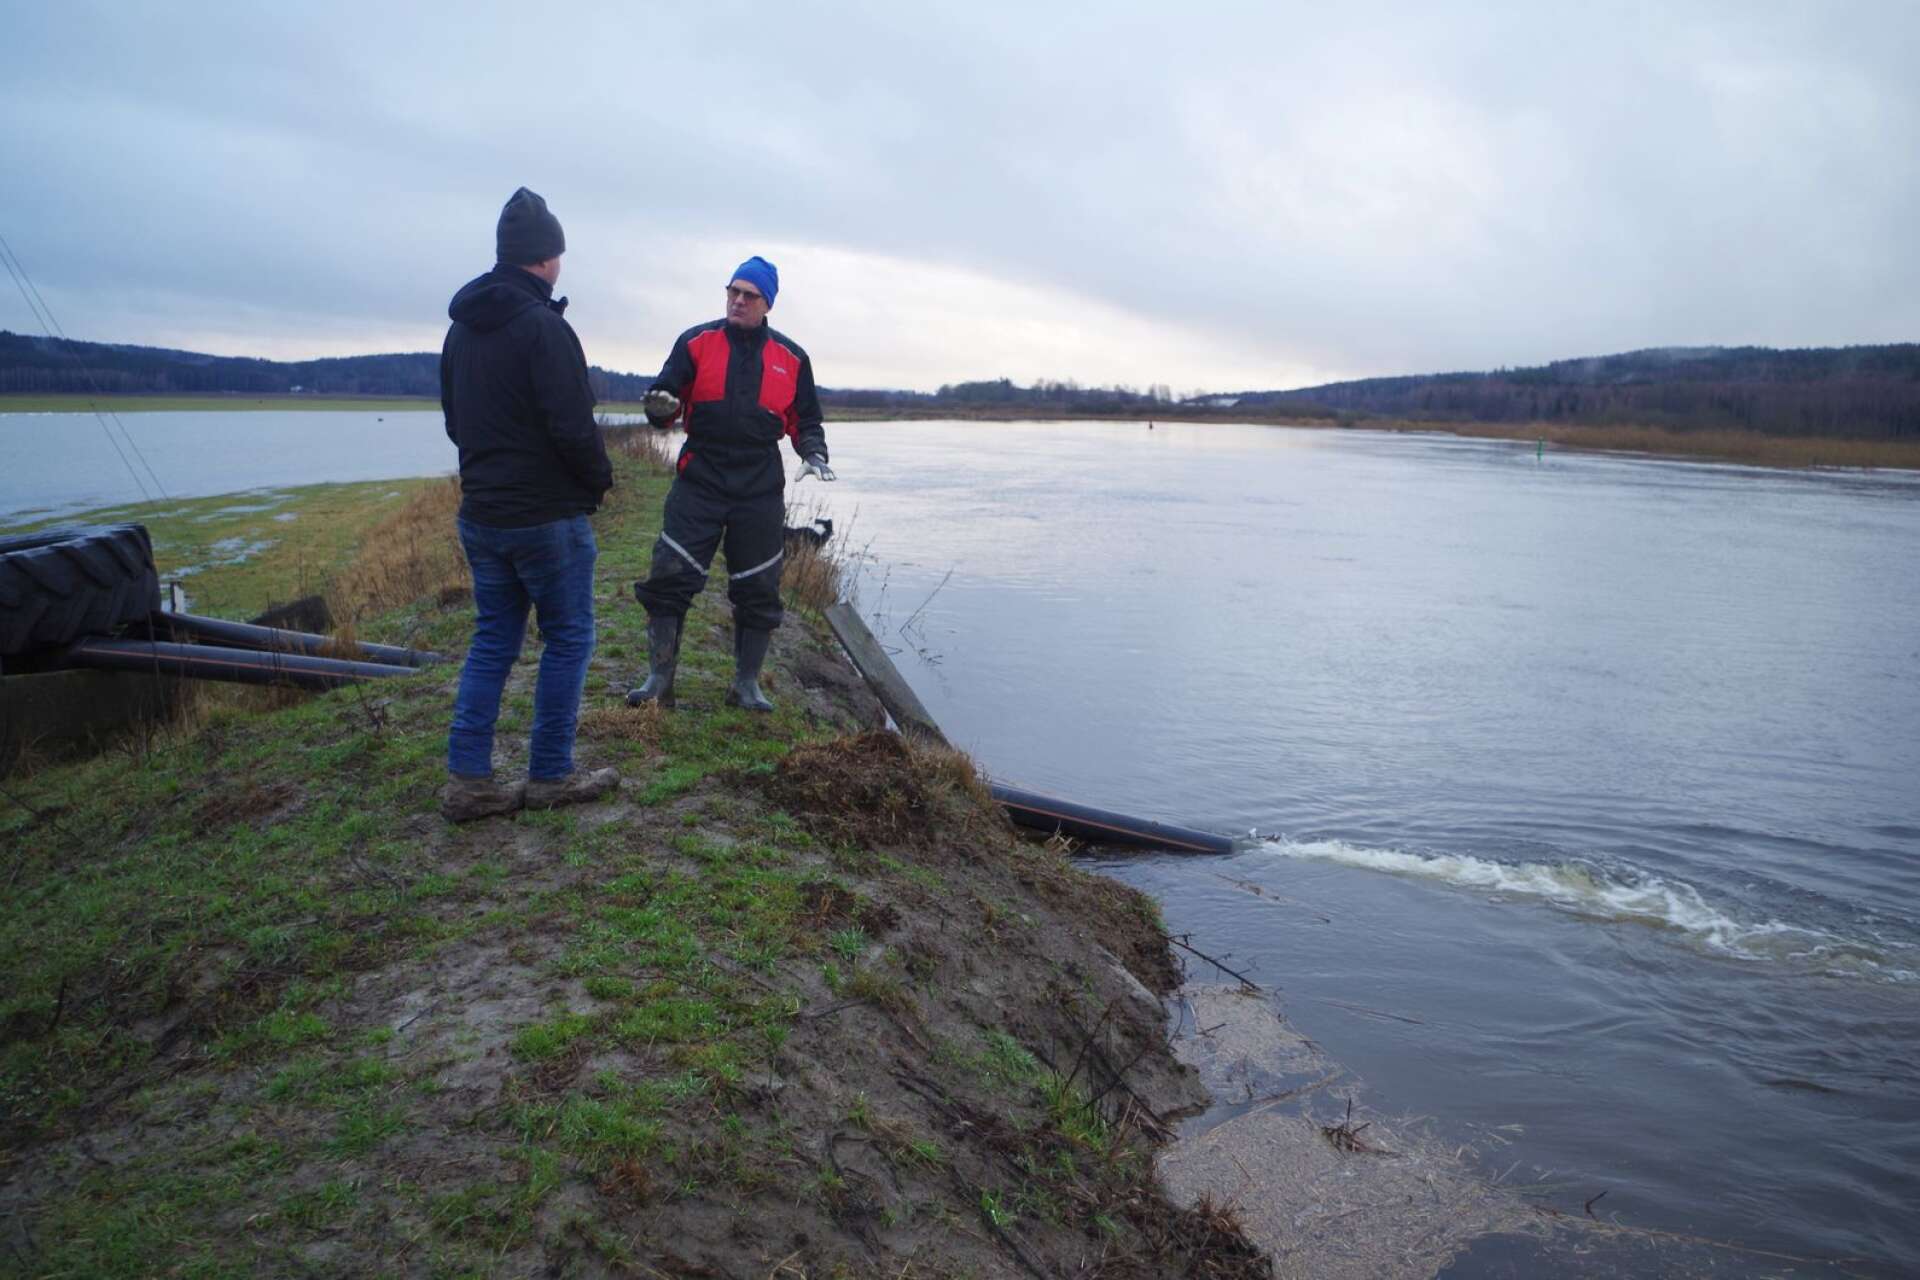 Översvämningsrisk hotar jordbruk längs Hökeströmmen och Byälven i Gillbergadalen. Två pumpar går för fullt för att återföra vatten till älven. Ola Axelsson och Arne Rosander är djupt bekymrade över det hotfulla läget.